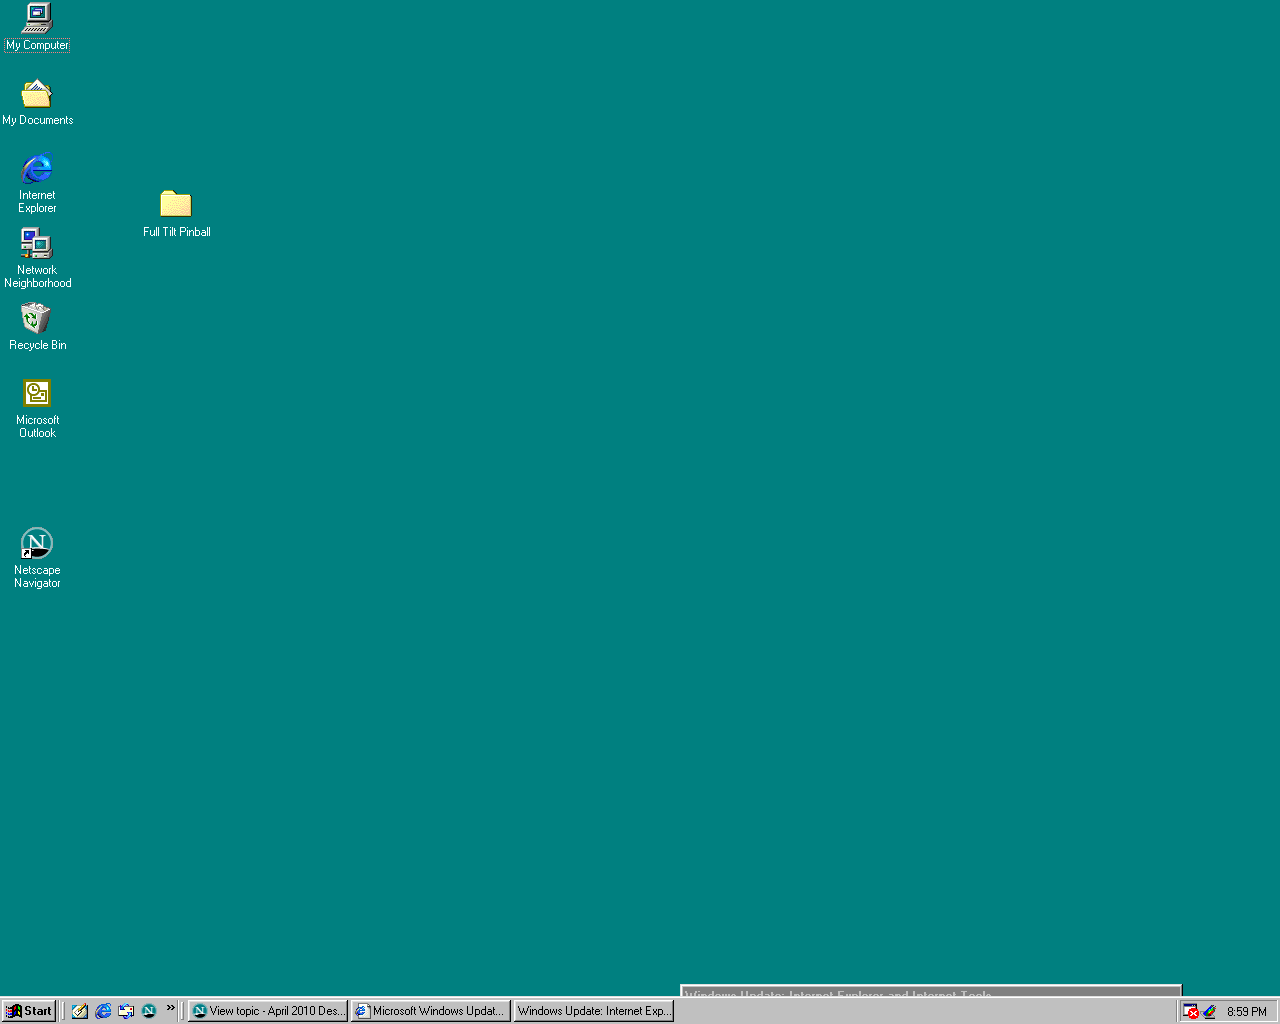 Tải miễn phí các hình nền desktop Windows 98 đẹp mắt và độc đáo nhất để trang trí cho thành phố của bạn. Thêm những thiết kế cổ điển vào màn hình máy tính của bạn sẽ tạo nên một không gian rất đặc biệt và đầy cảm hứng.